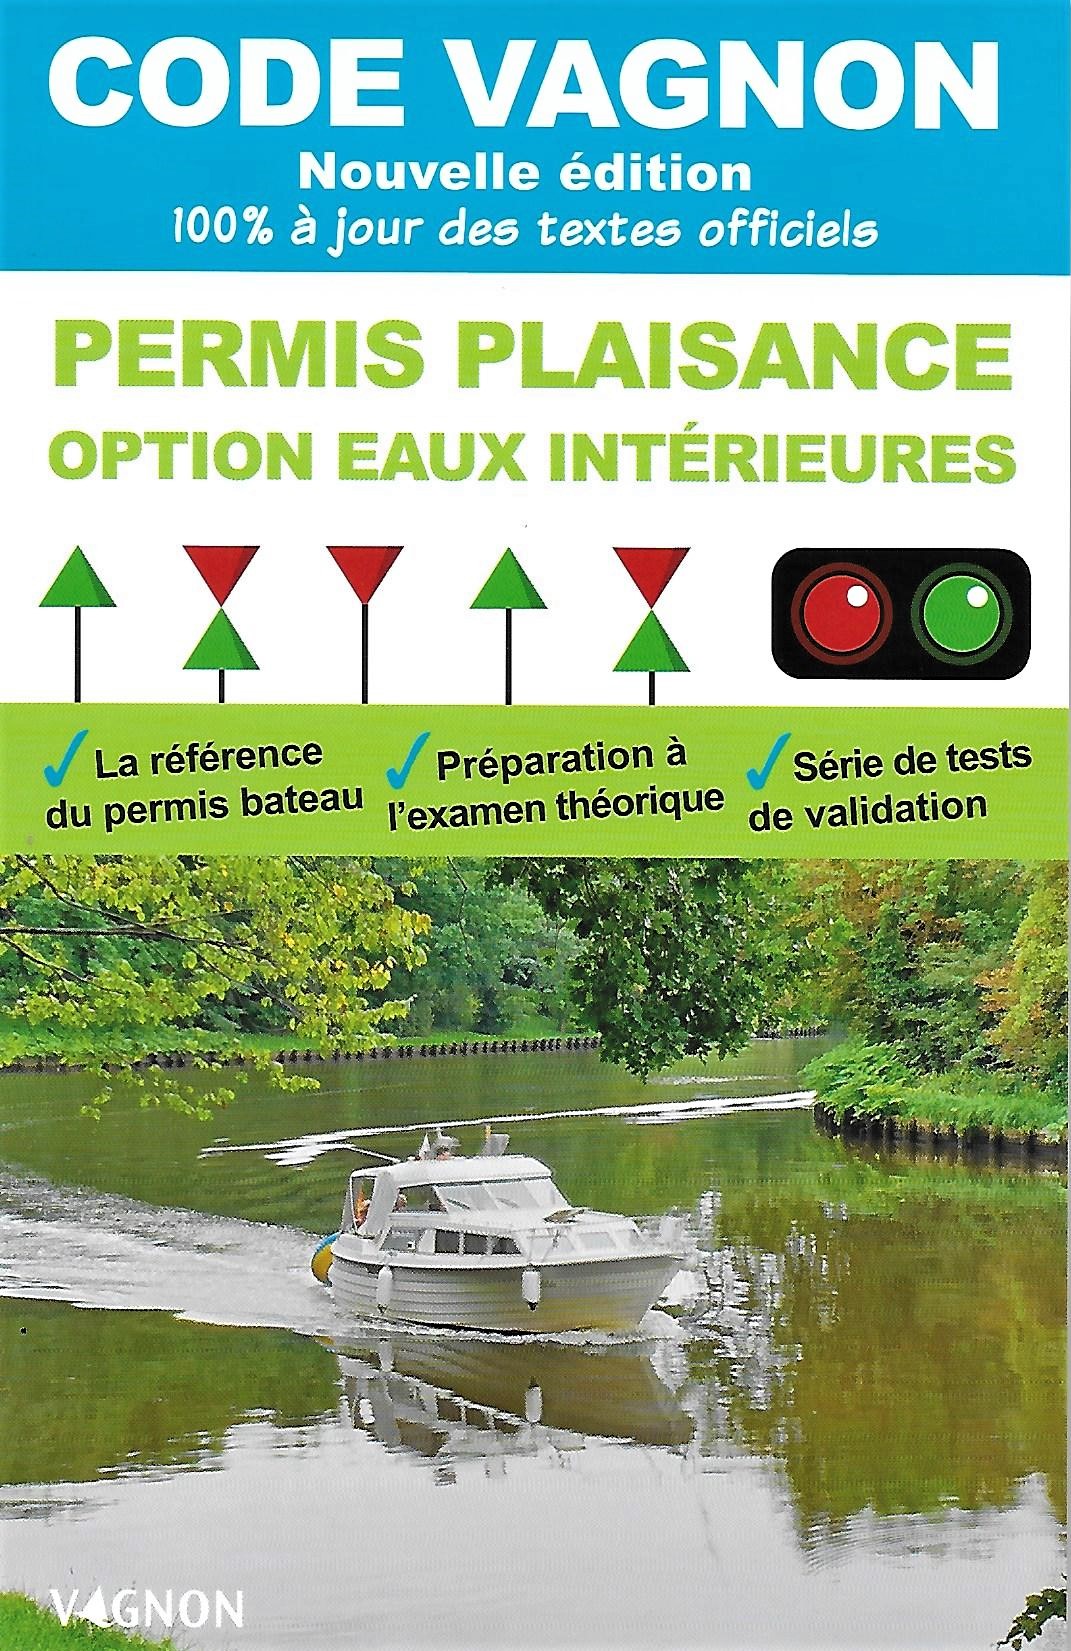 Code Vagnon - Permis plaisance, option eaux intérieures